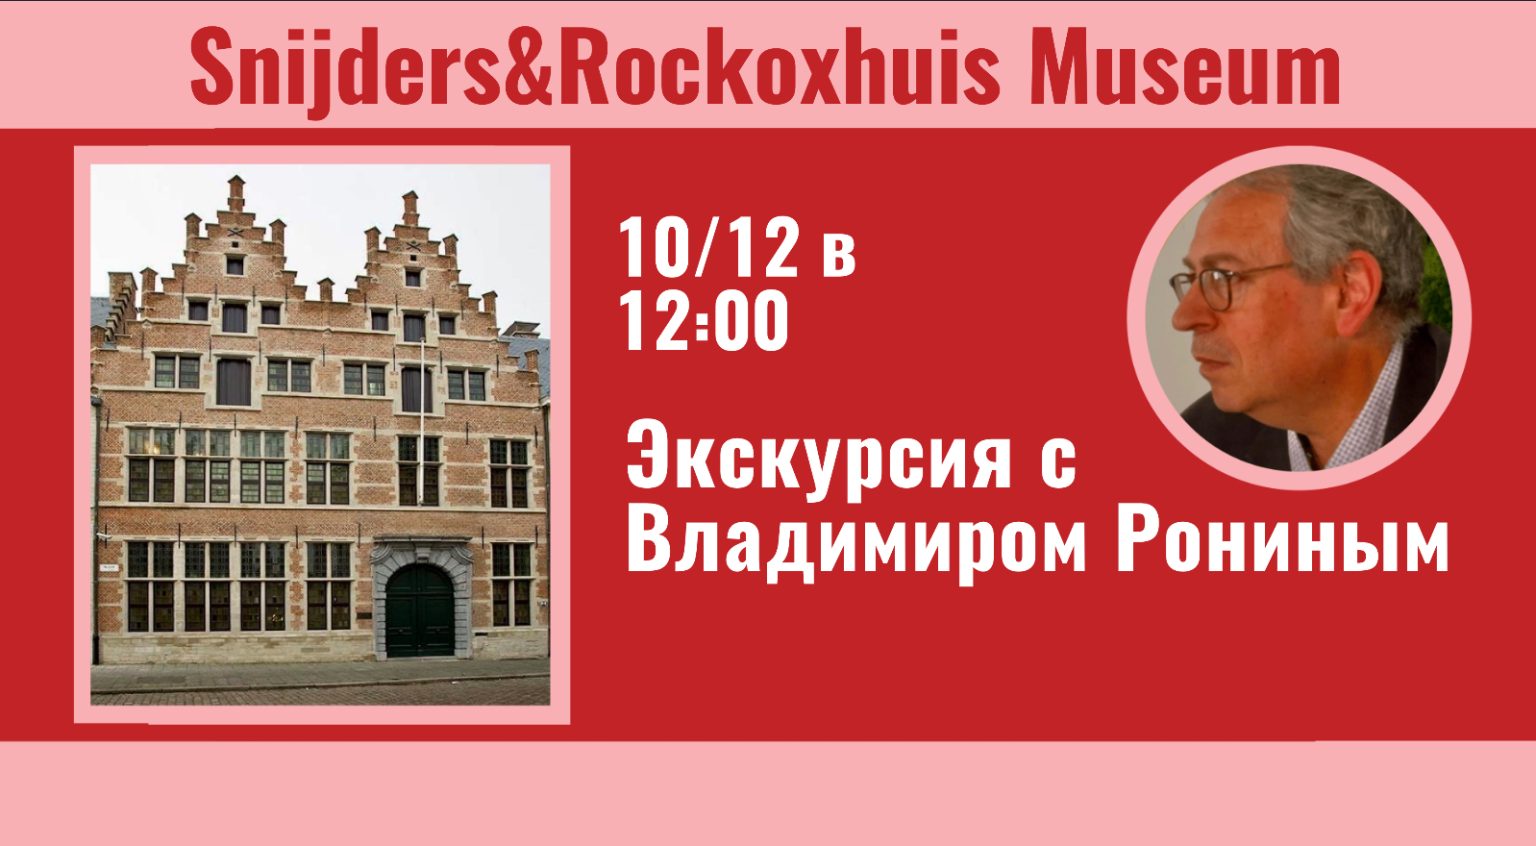 Поход в музей Snijders & Rockoxhuis с Владимиром Рониным.